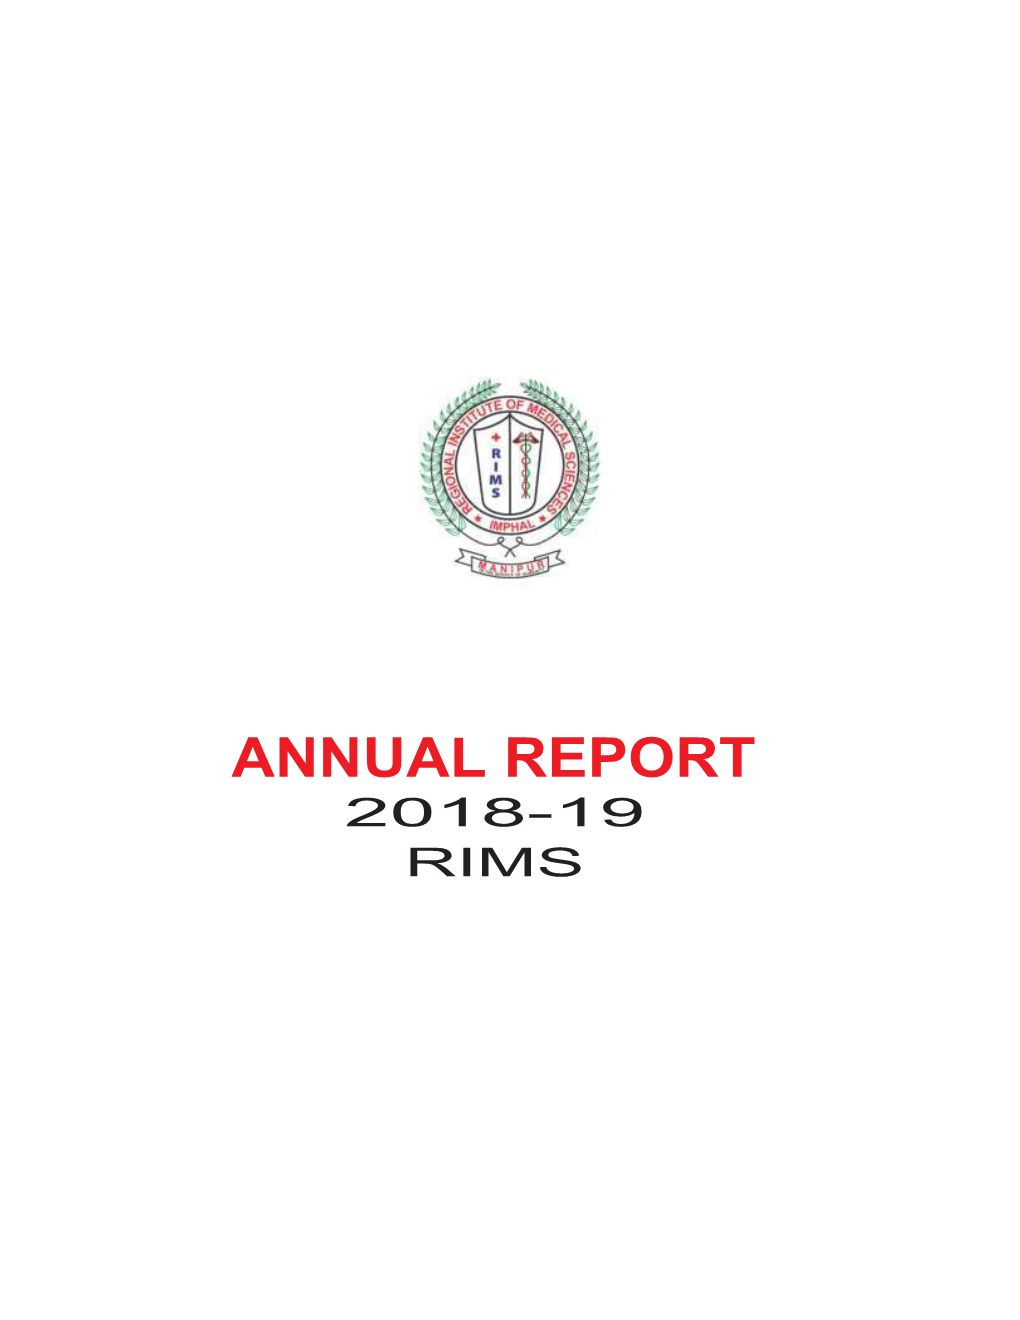 Annual Report 2018-19 Rims